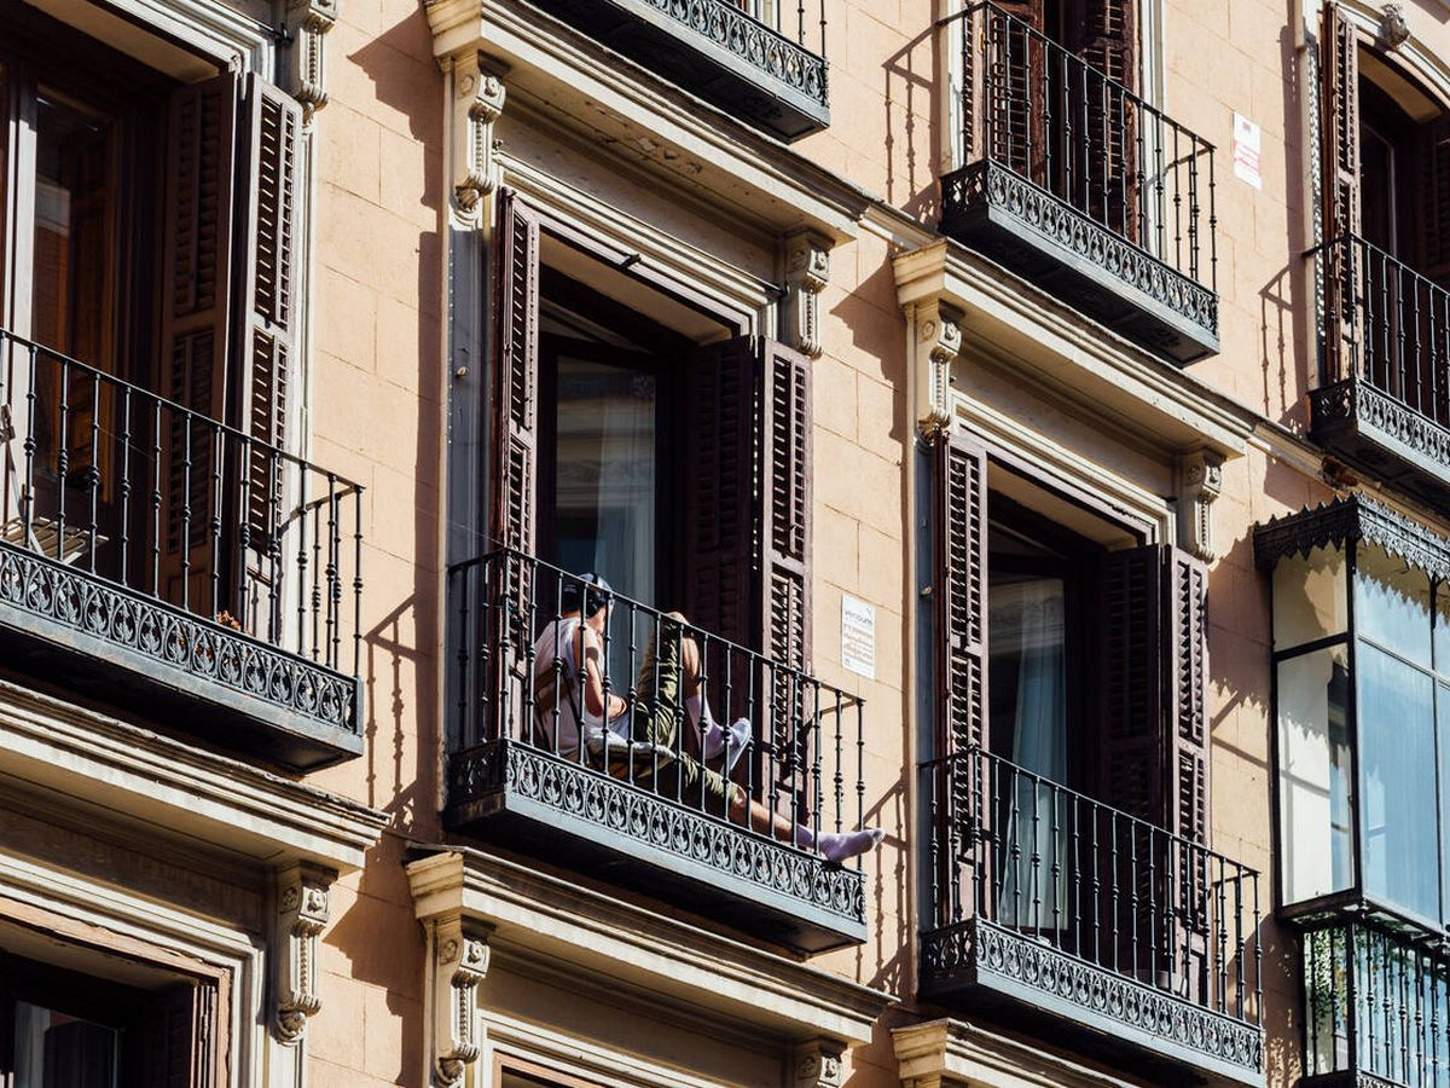 alquiler piso barcelona balcon fachada istock